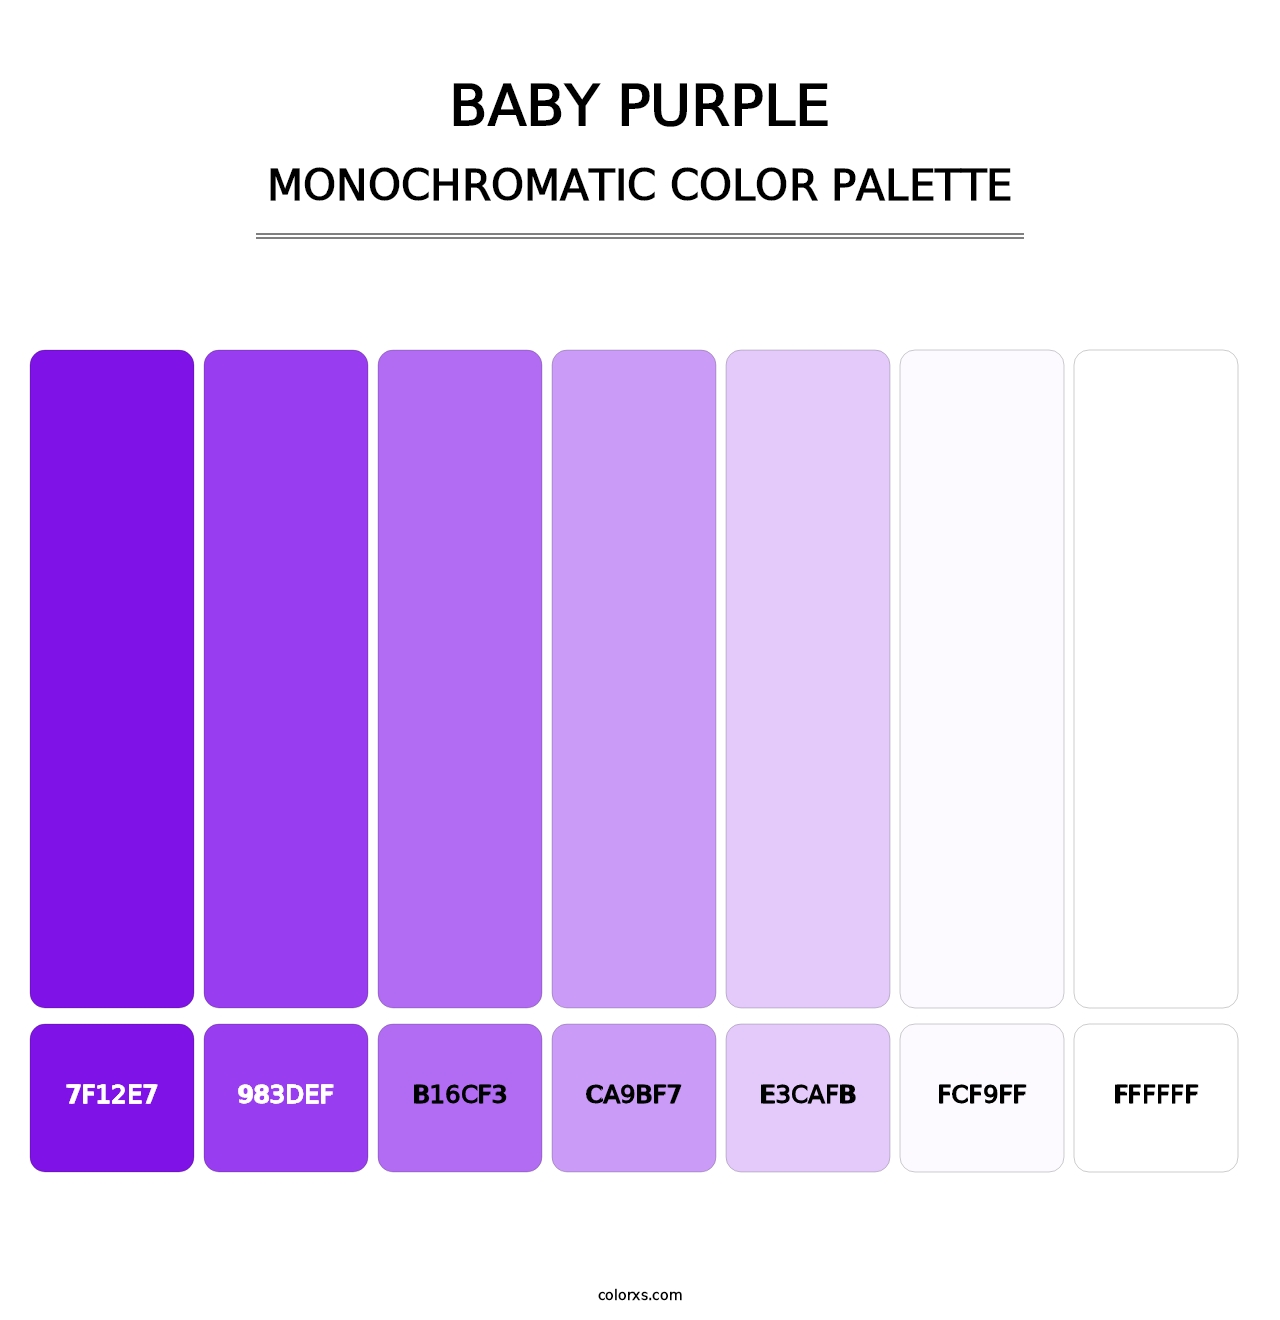 Baby Purple - Monochromatic Color Palette